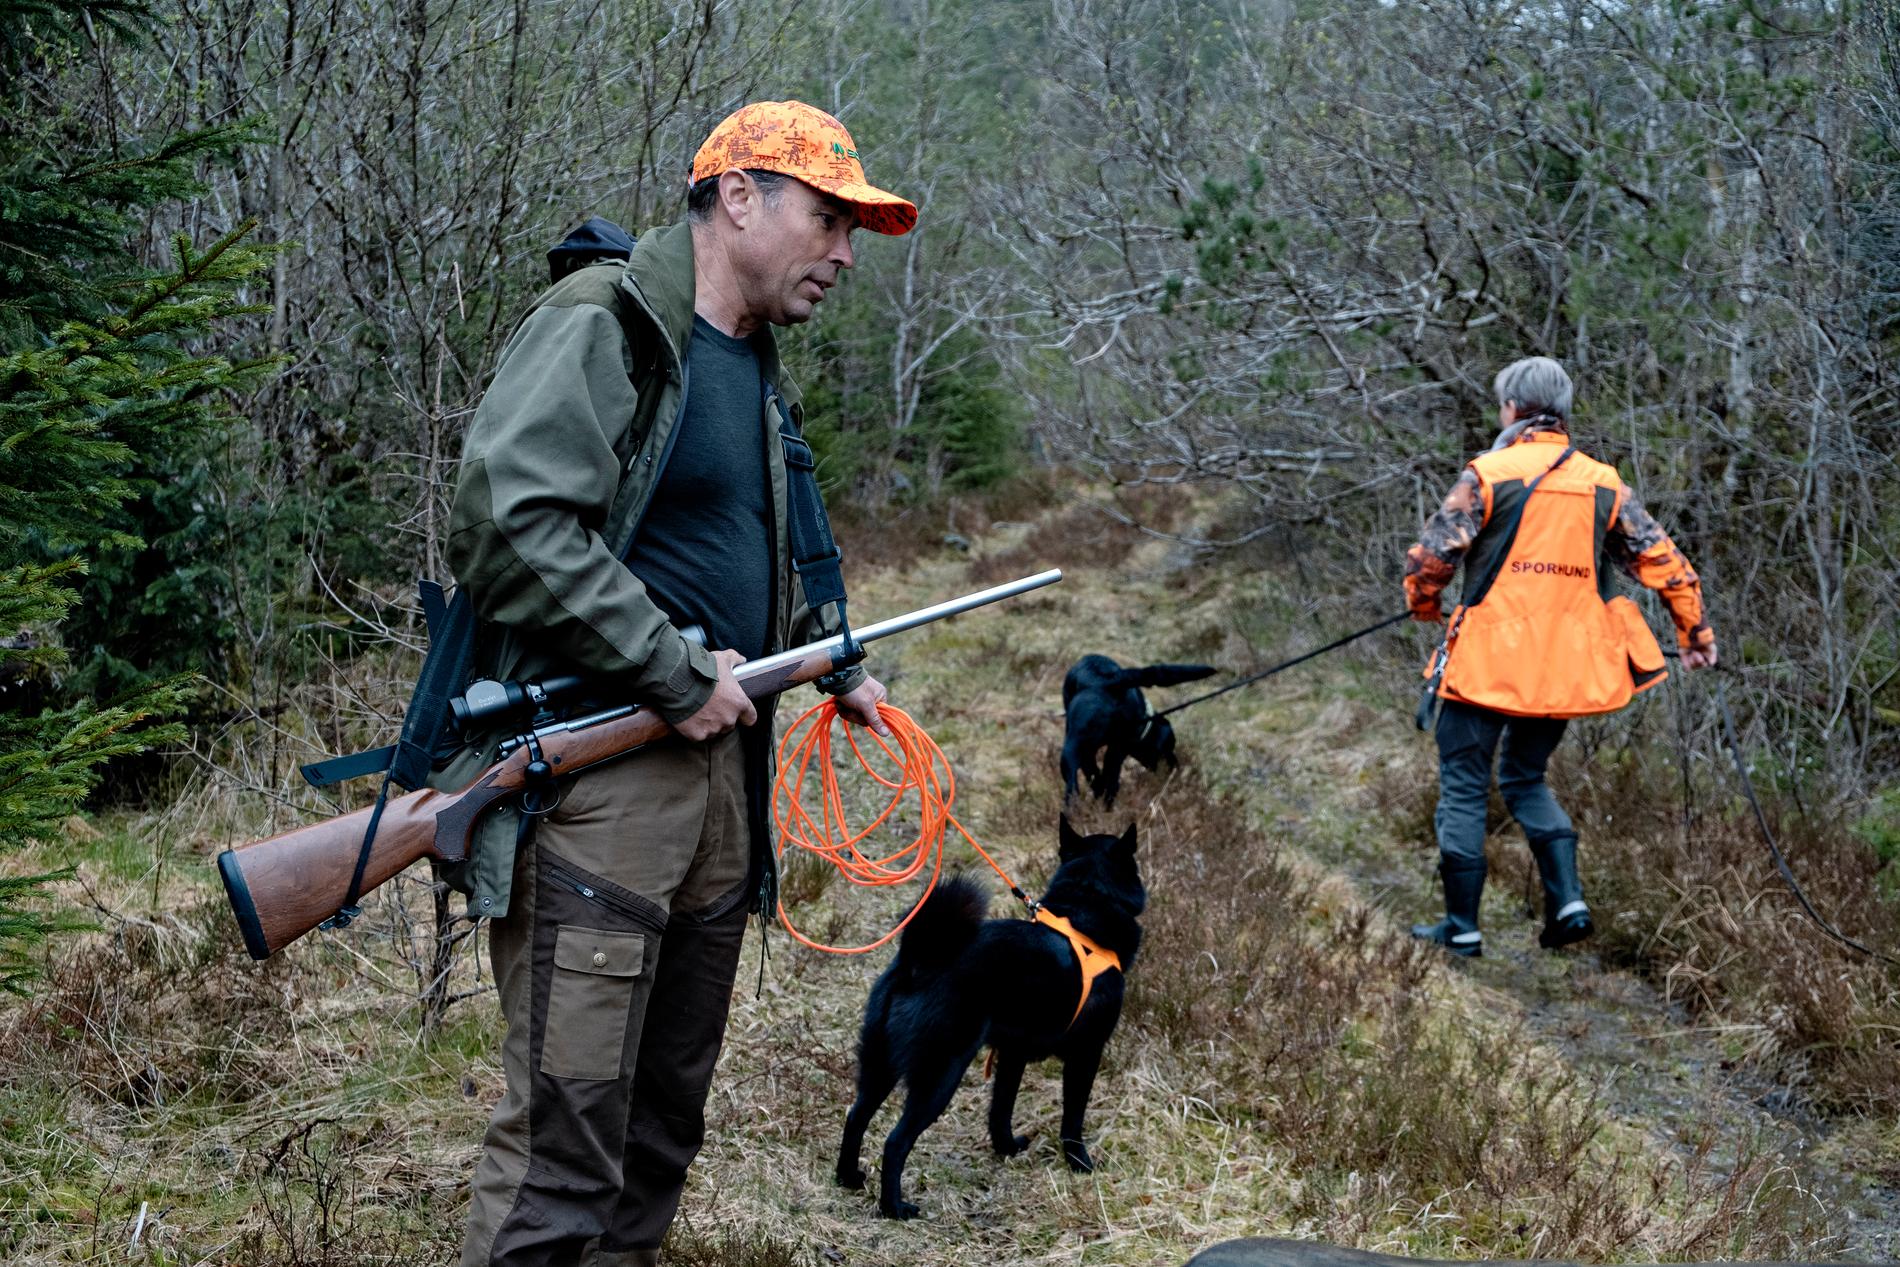 Jaktleder Stein Mortensbakke har ledet jakten på ulven de siste årene. Han sier jakten på ulven er krevende.